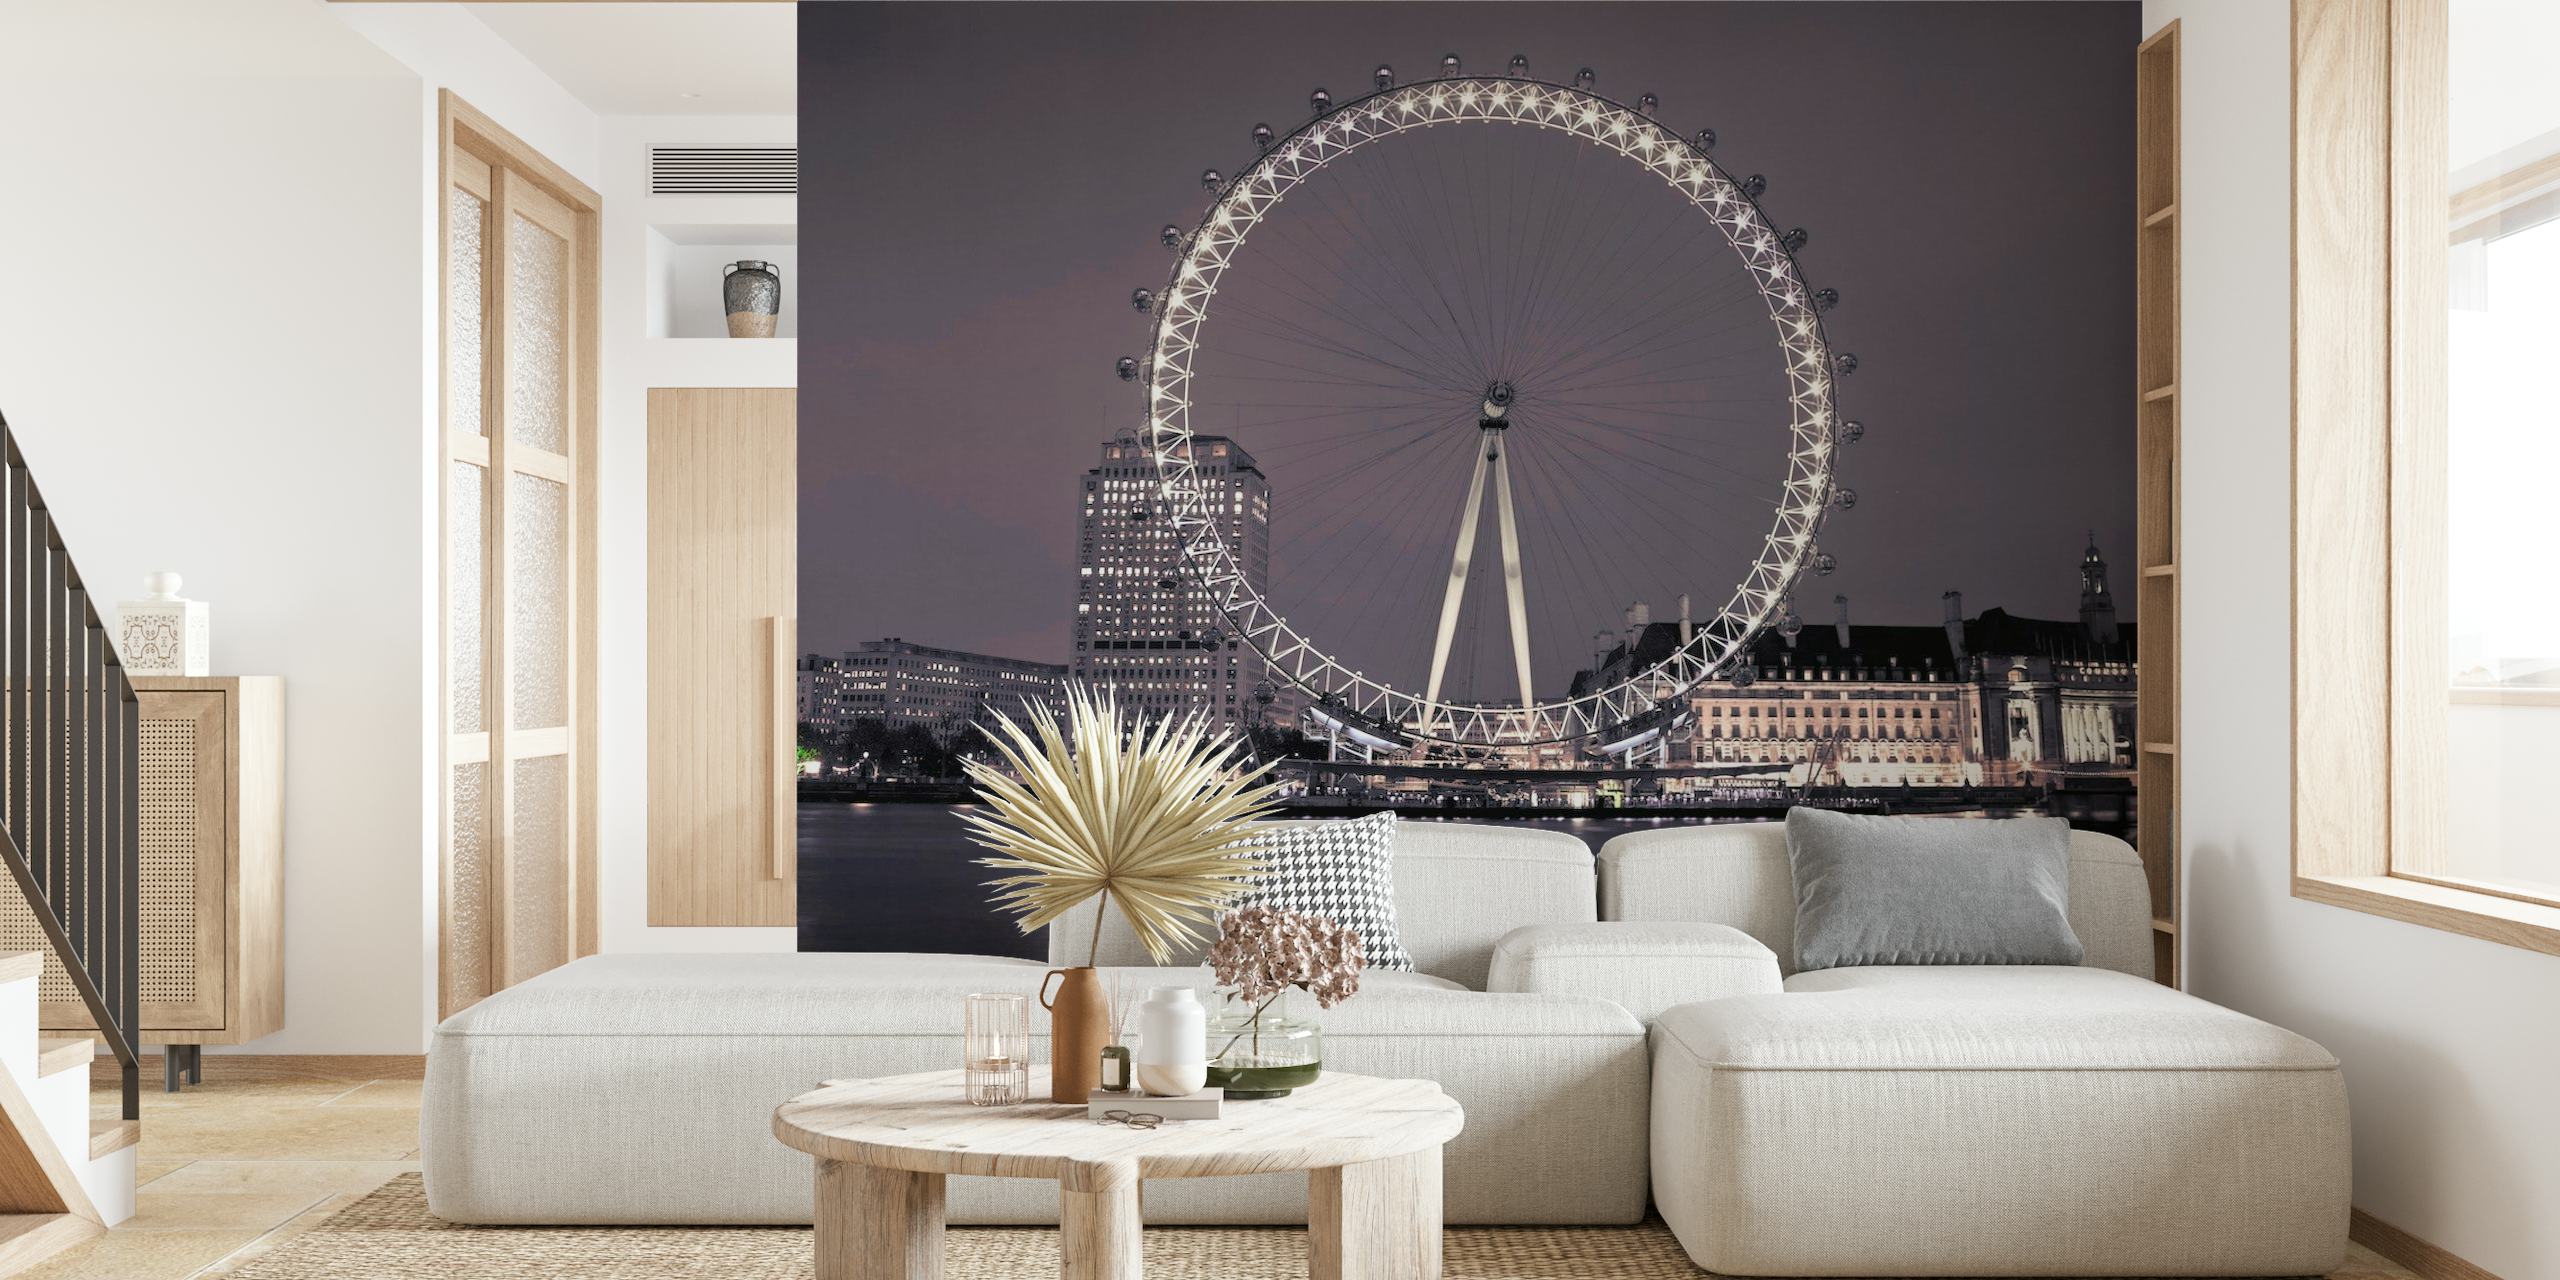 Iconic London Eye behang